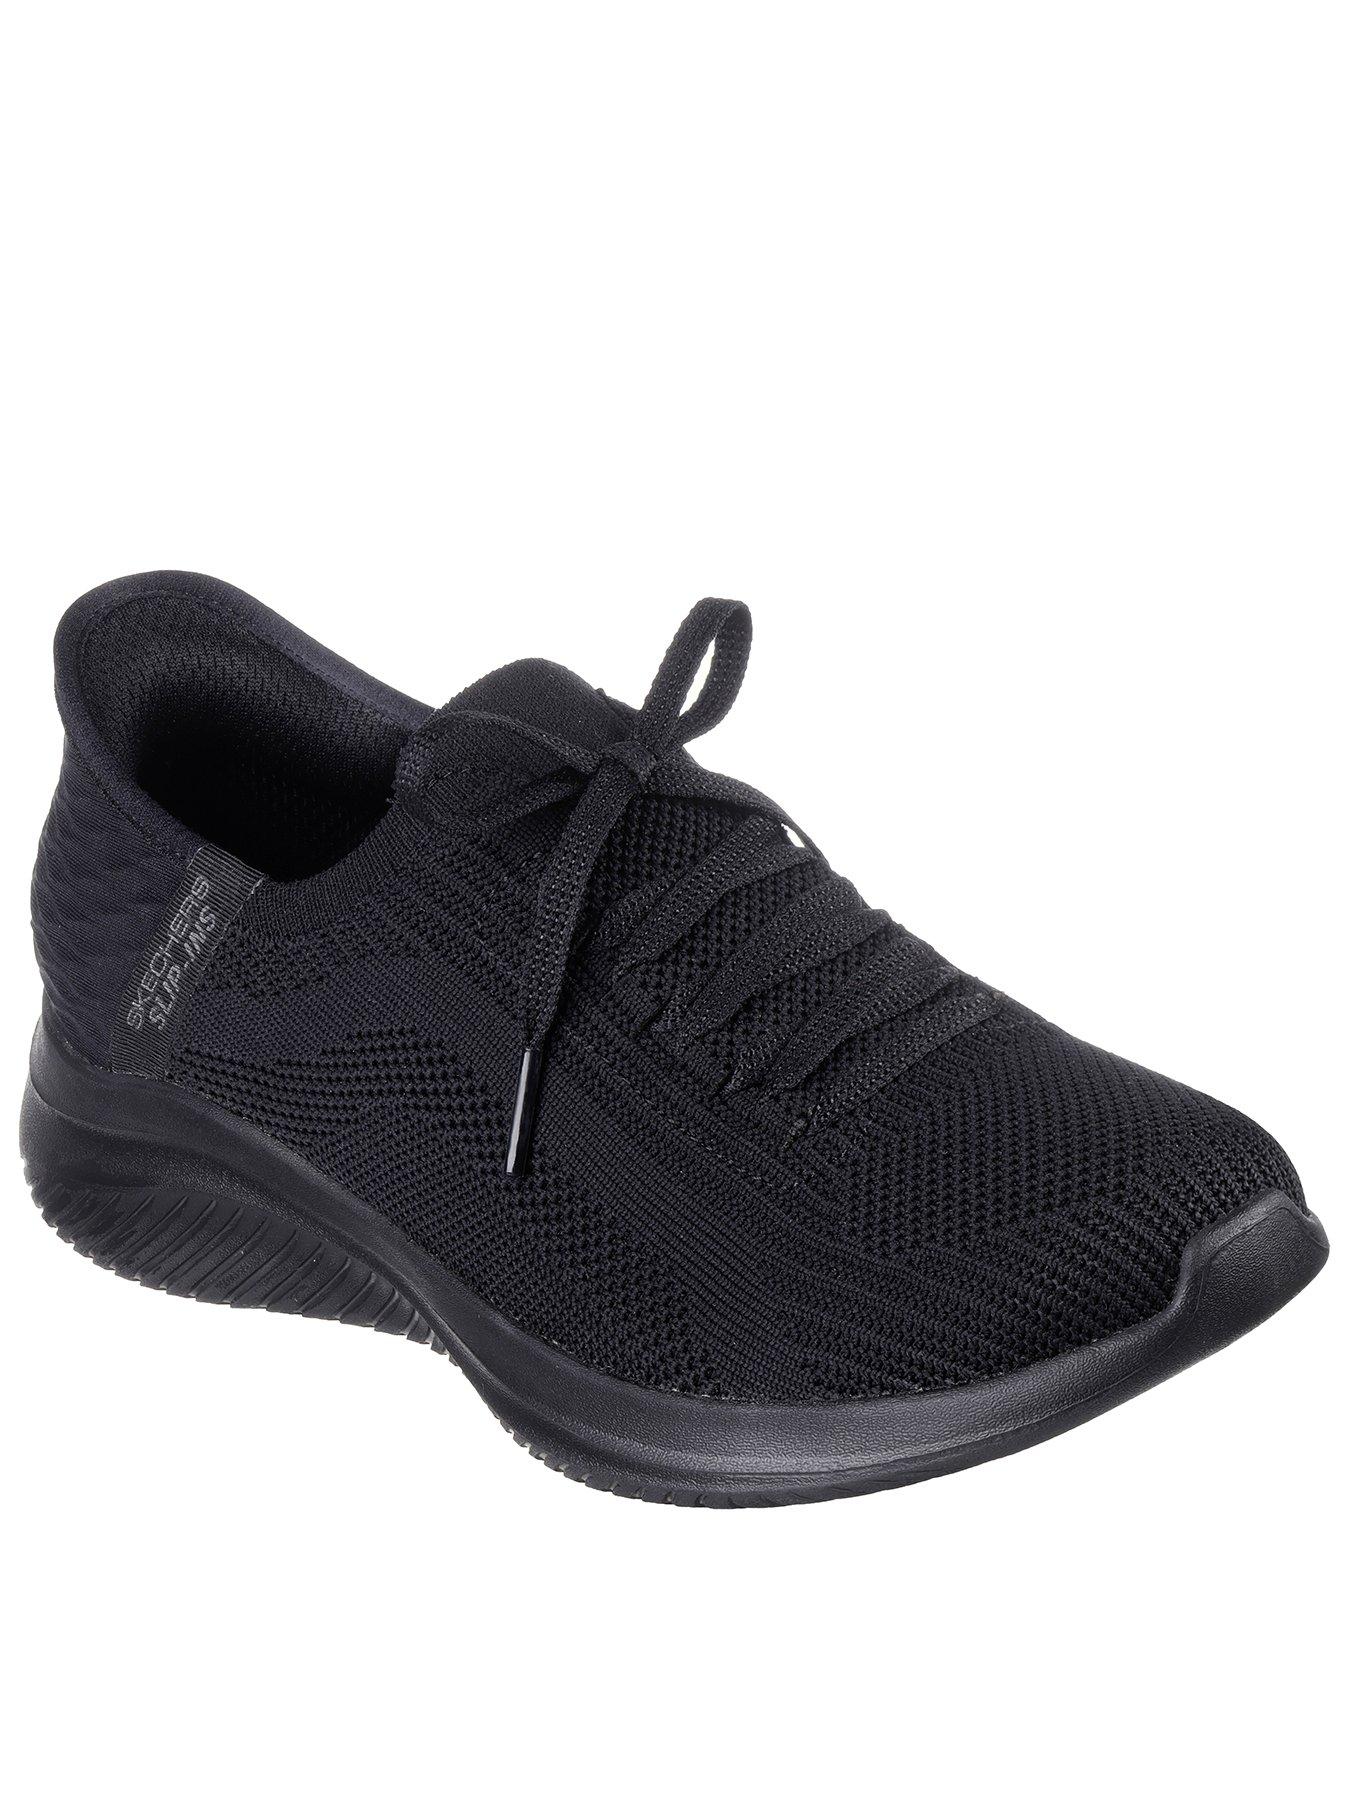 Skechers GOwalk Flex Arch Fit Vegan Washable Knit Sandals - Splendor 